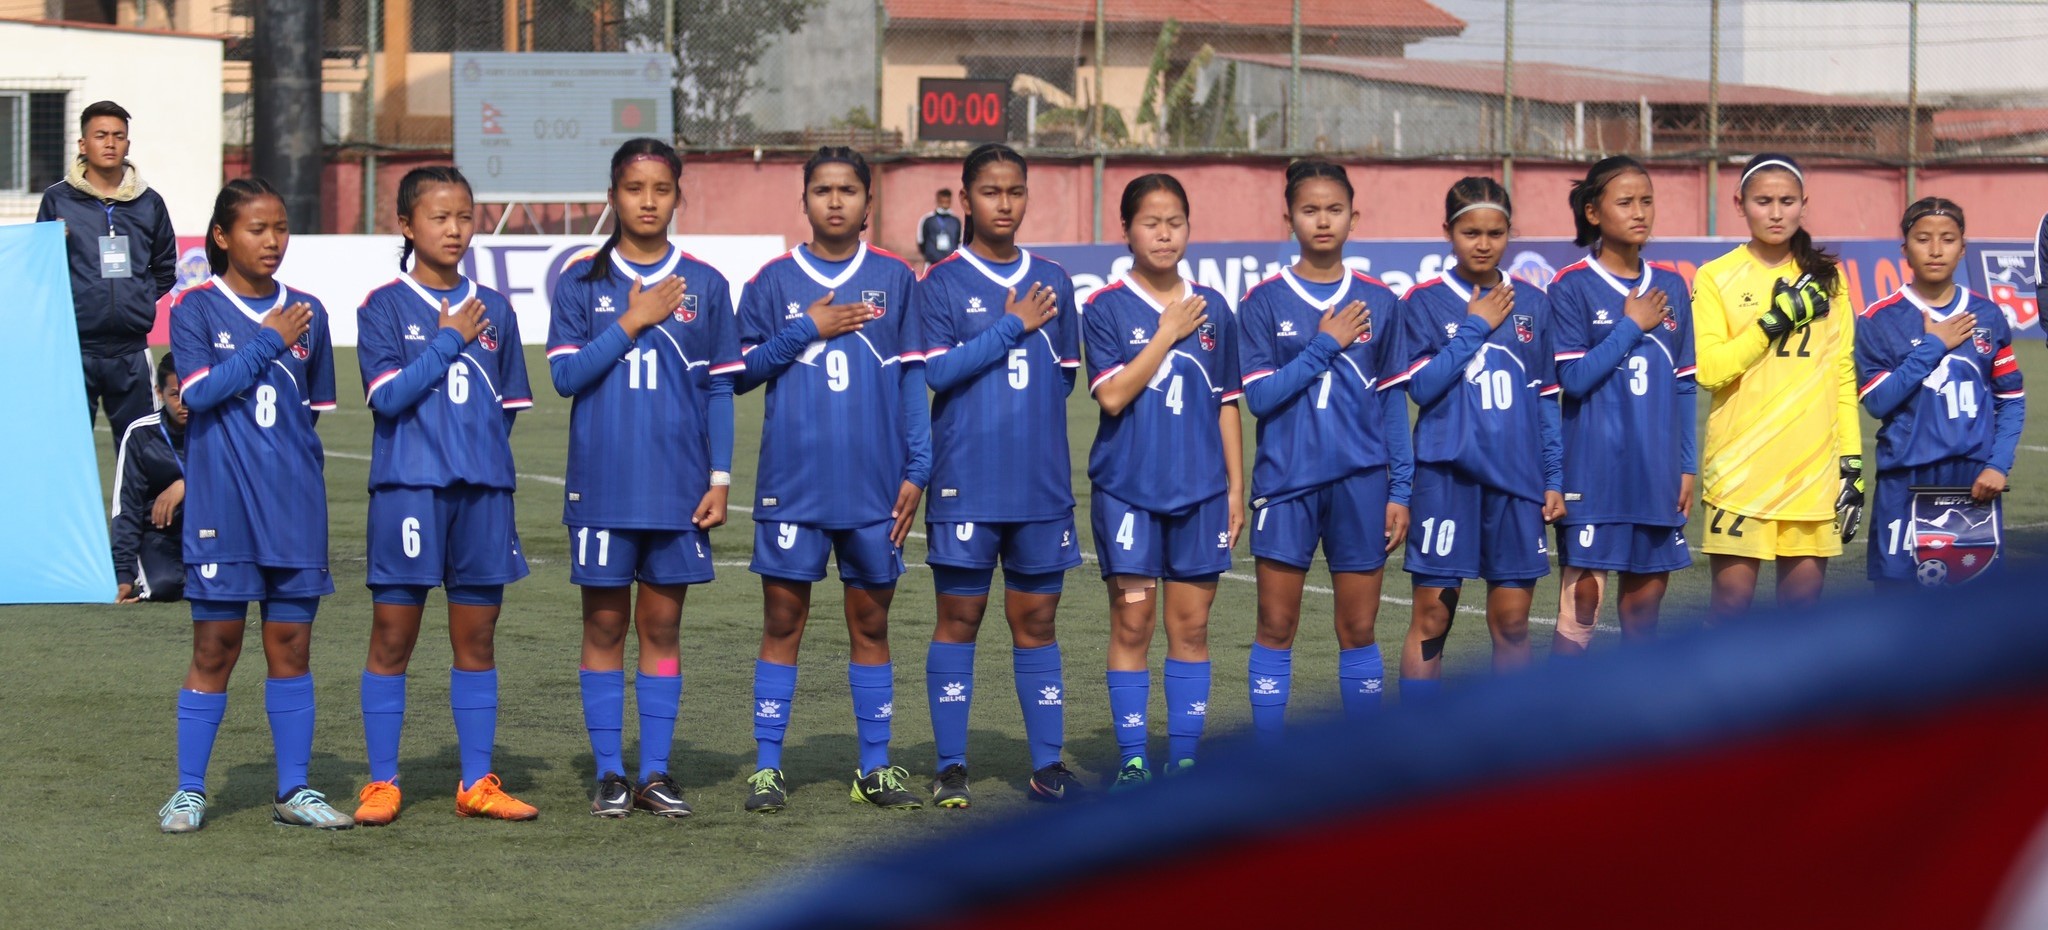 साफ यू-१६ महिला फुटबल : नेपाल र भारत भिड्दै, दुवै टोली जित्नैपर्ने दबाबमा